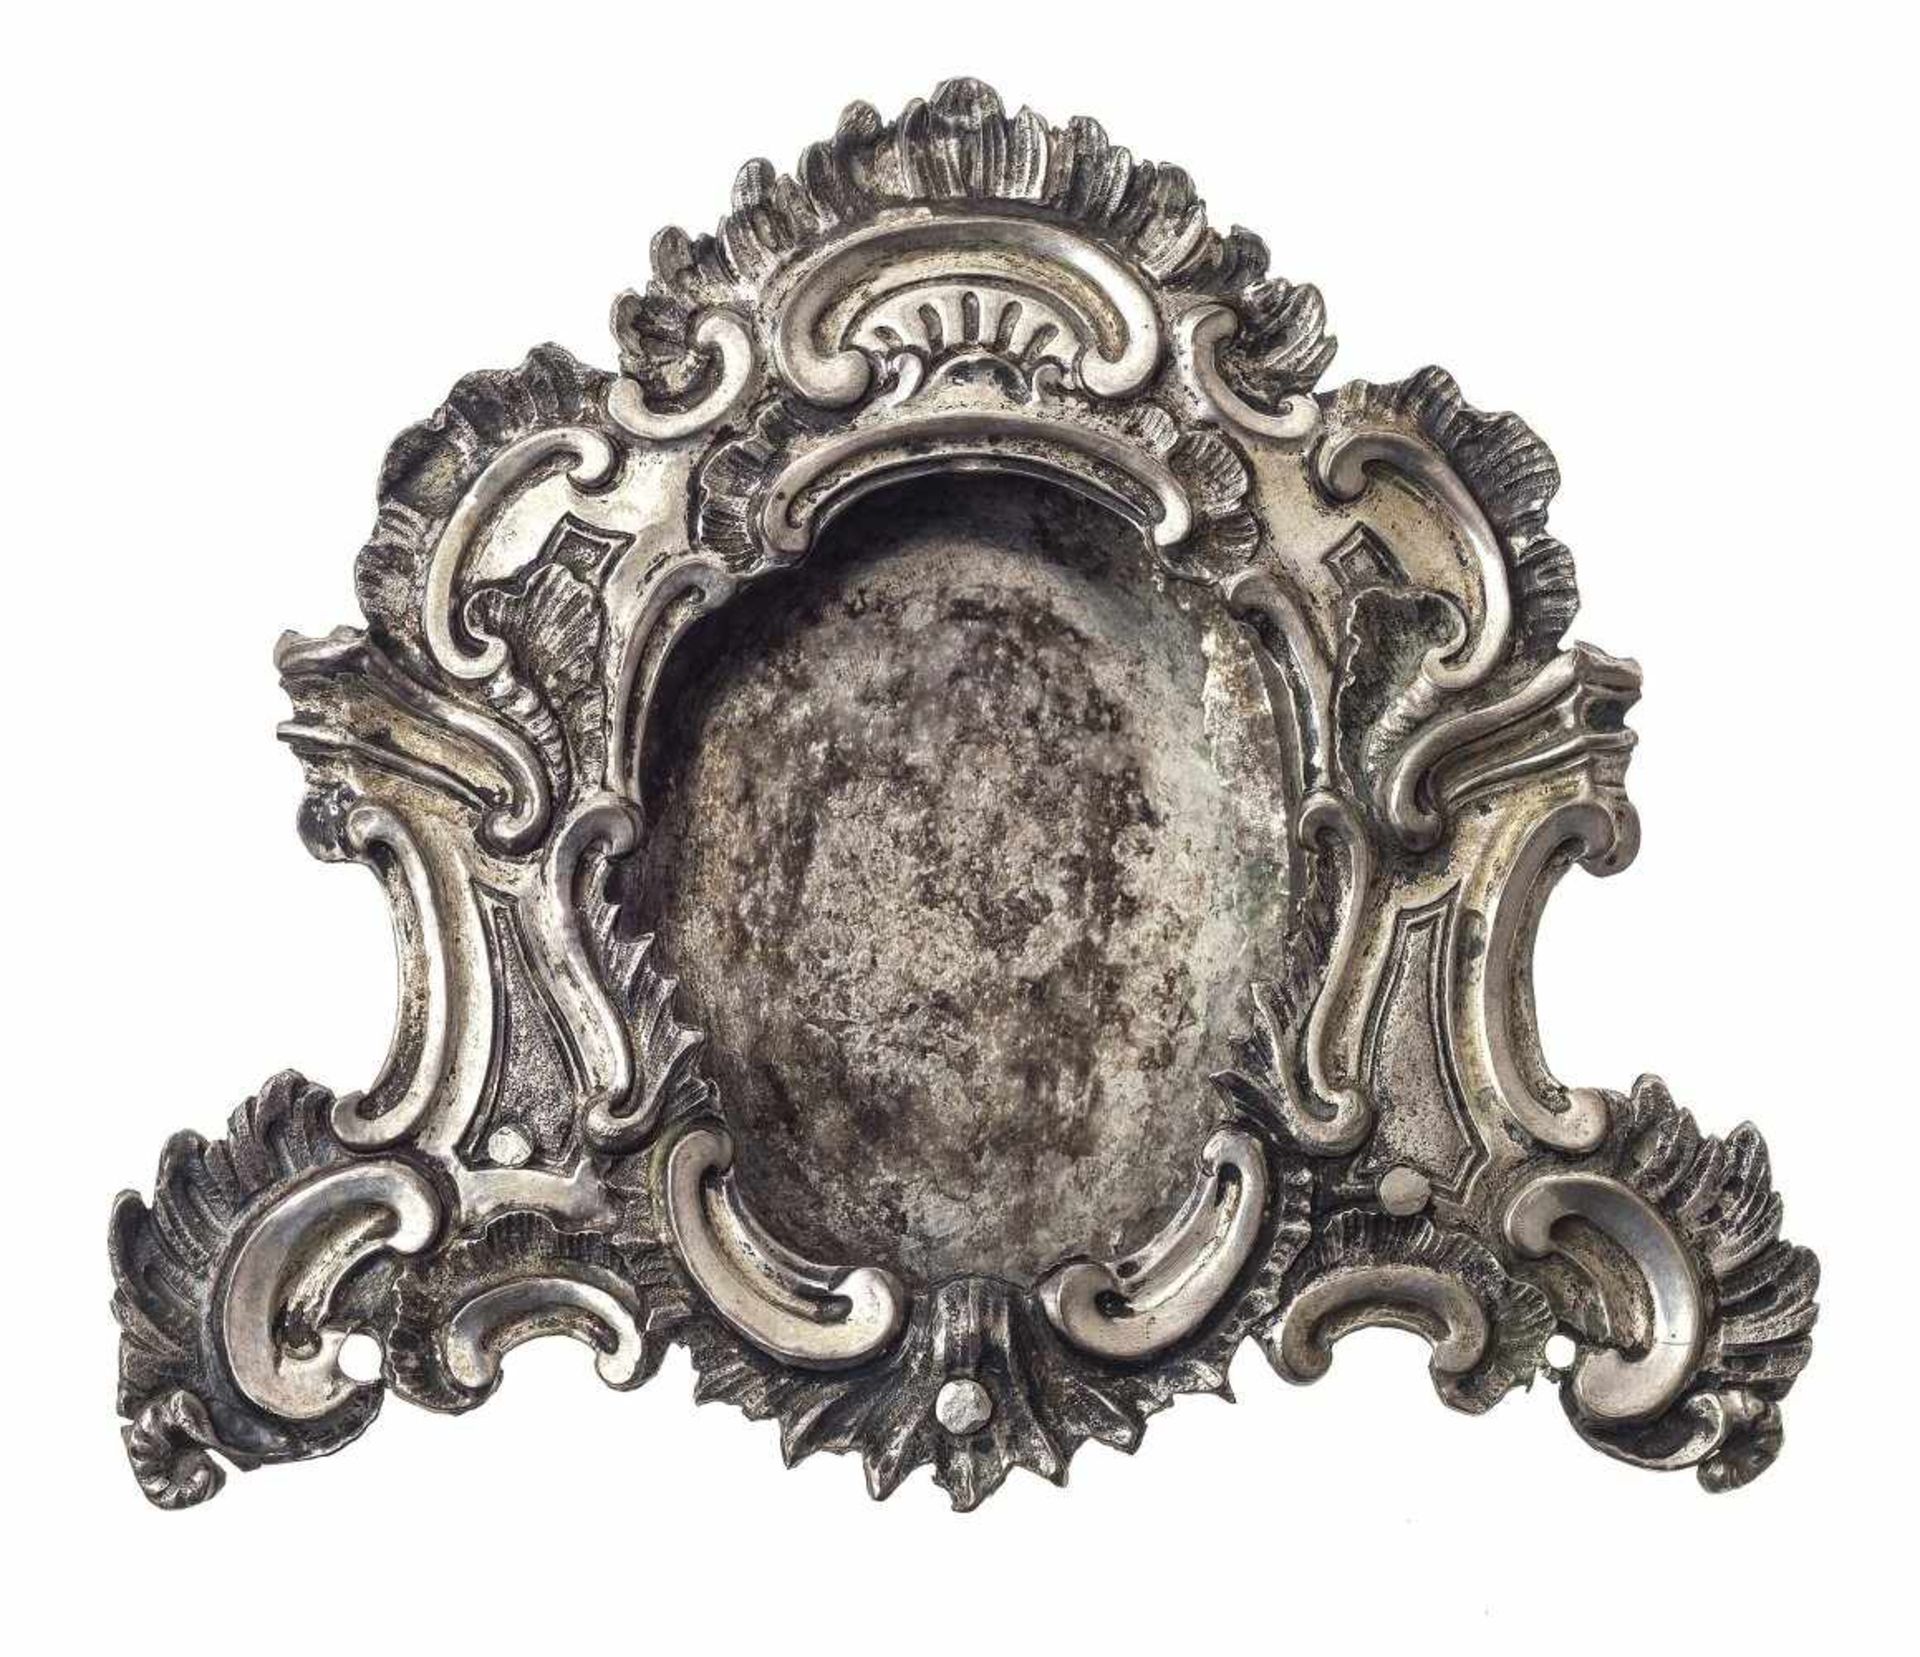 Rahmen für ReliquienÖsterreich, um 1750. Silber, getrieben. Muscheldekor. Ehemals Teil eines